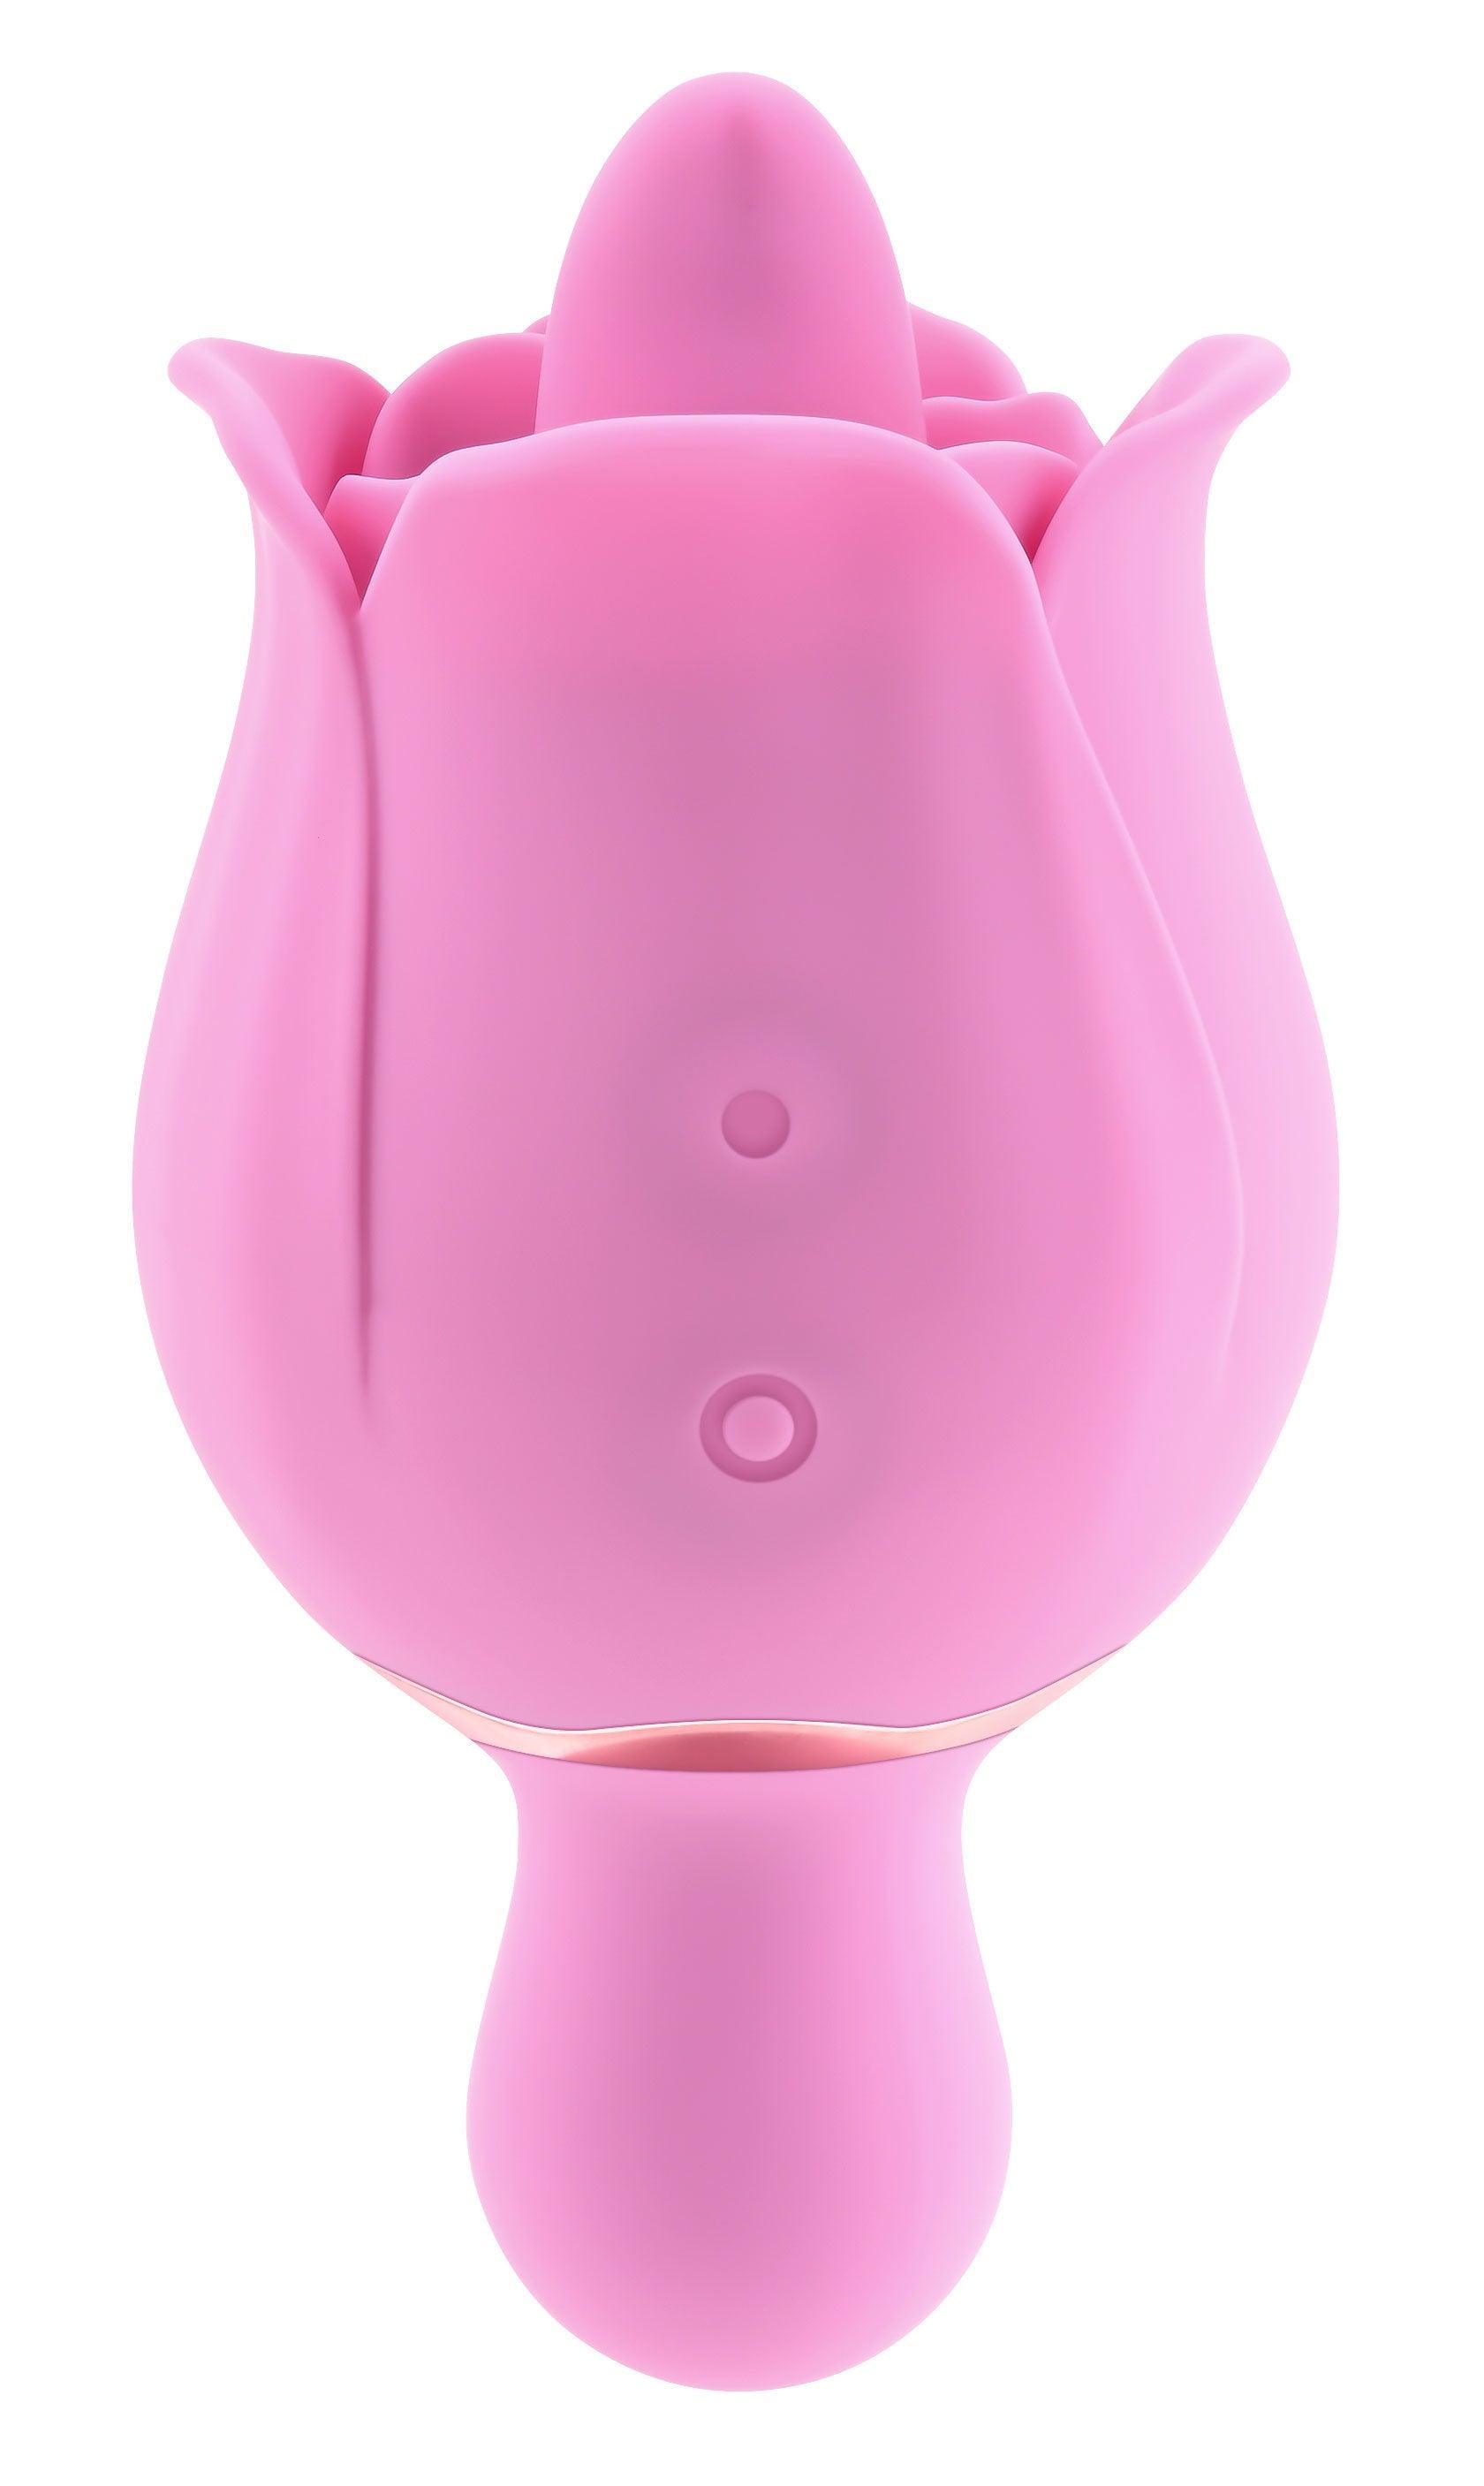 Eve's Ravishing Clit Flicking Rose - Pink - My Sex Toy Hub